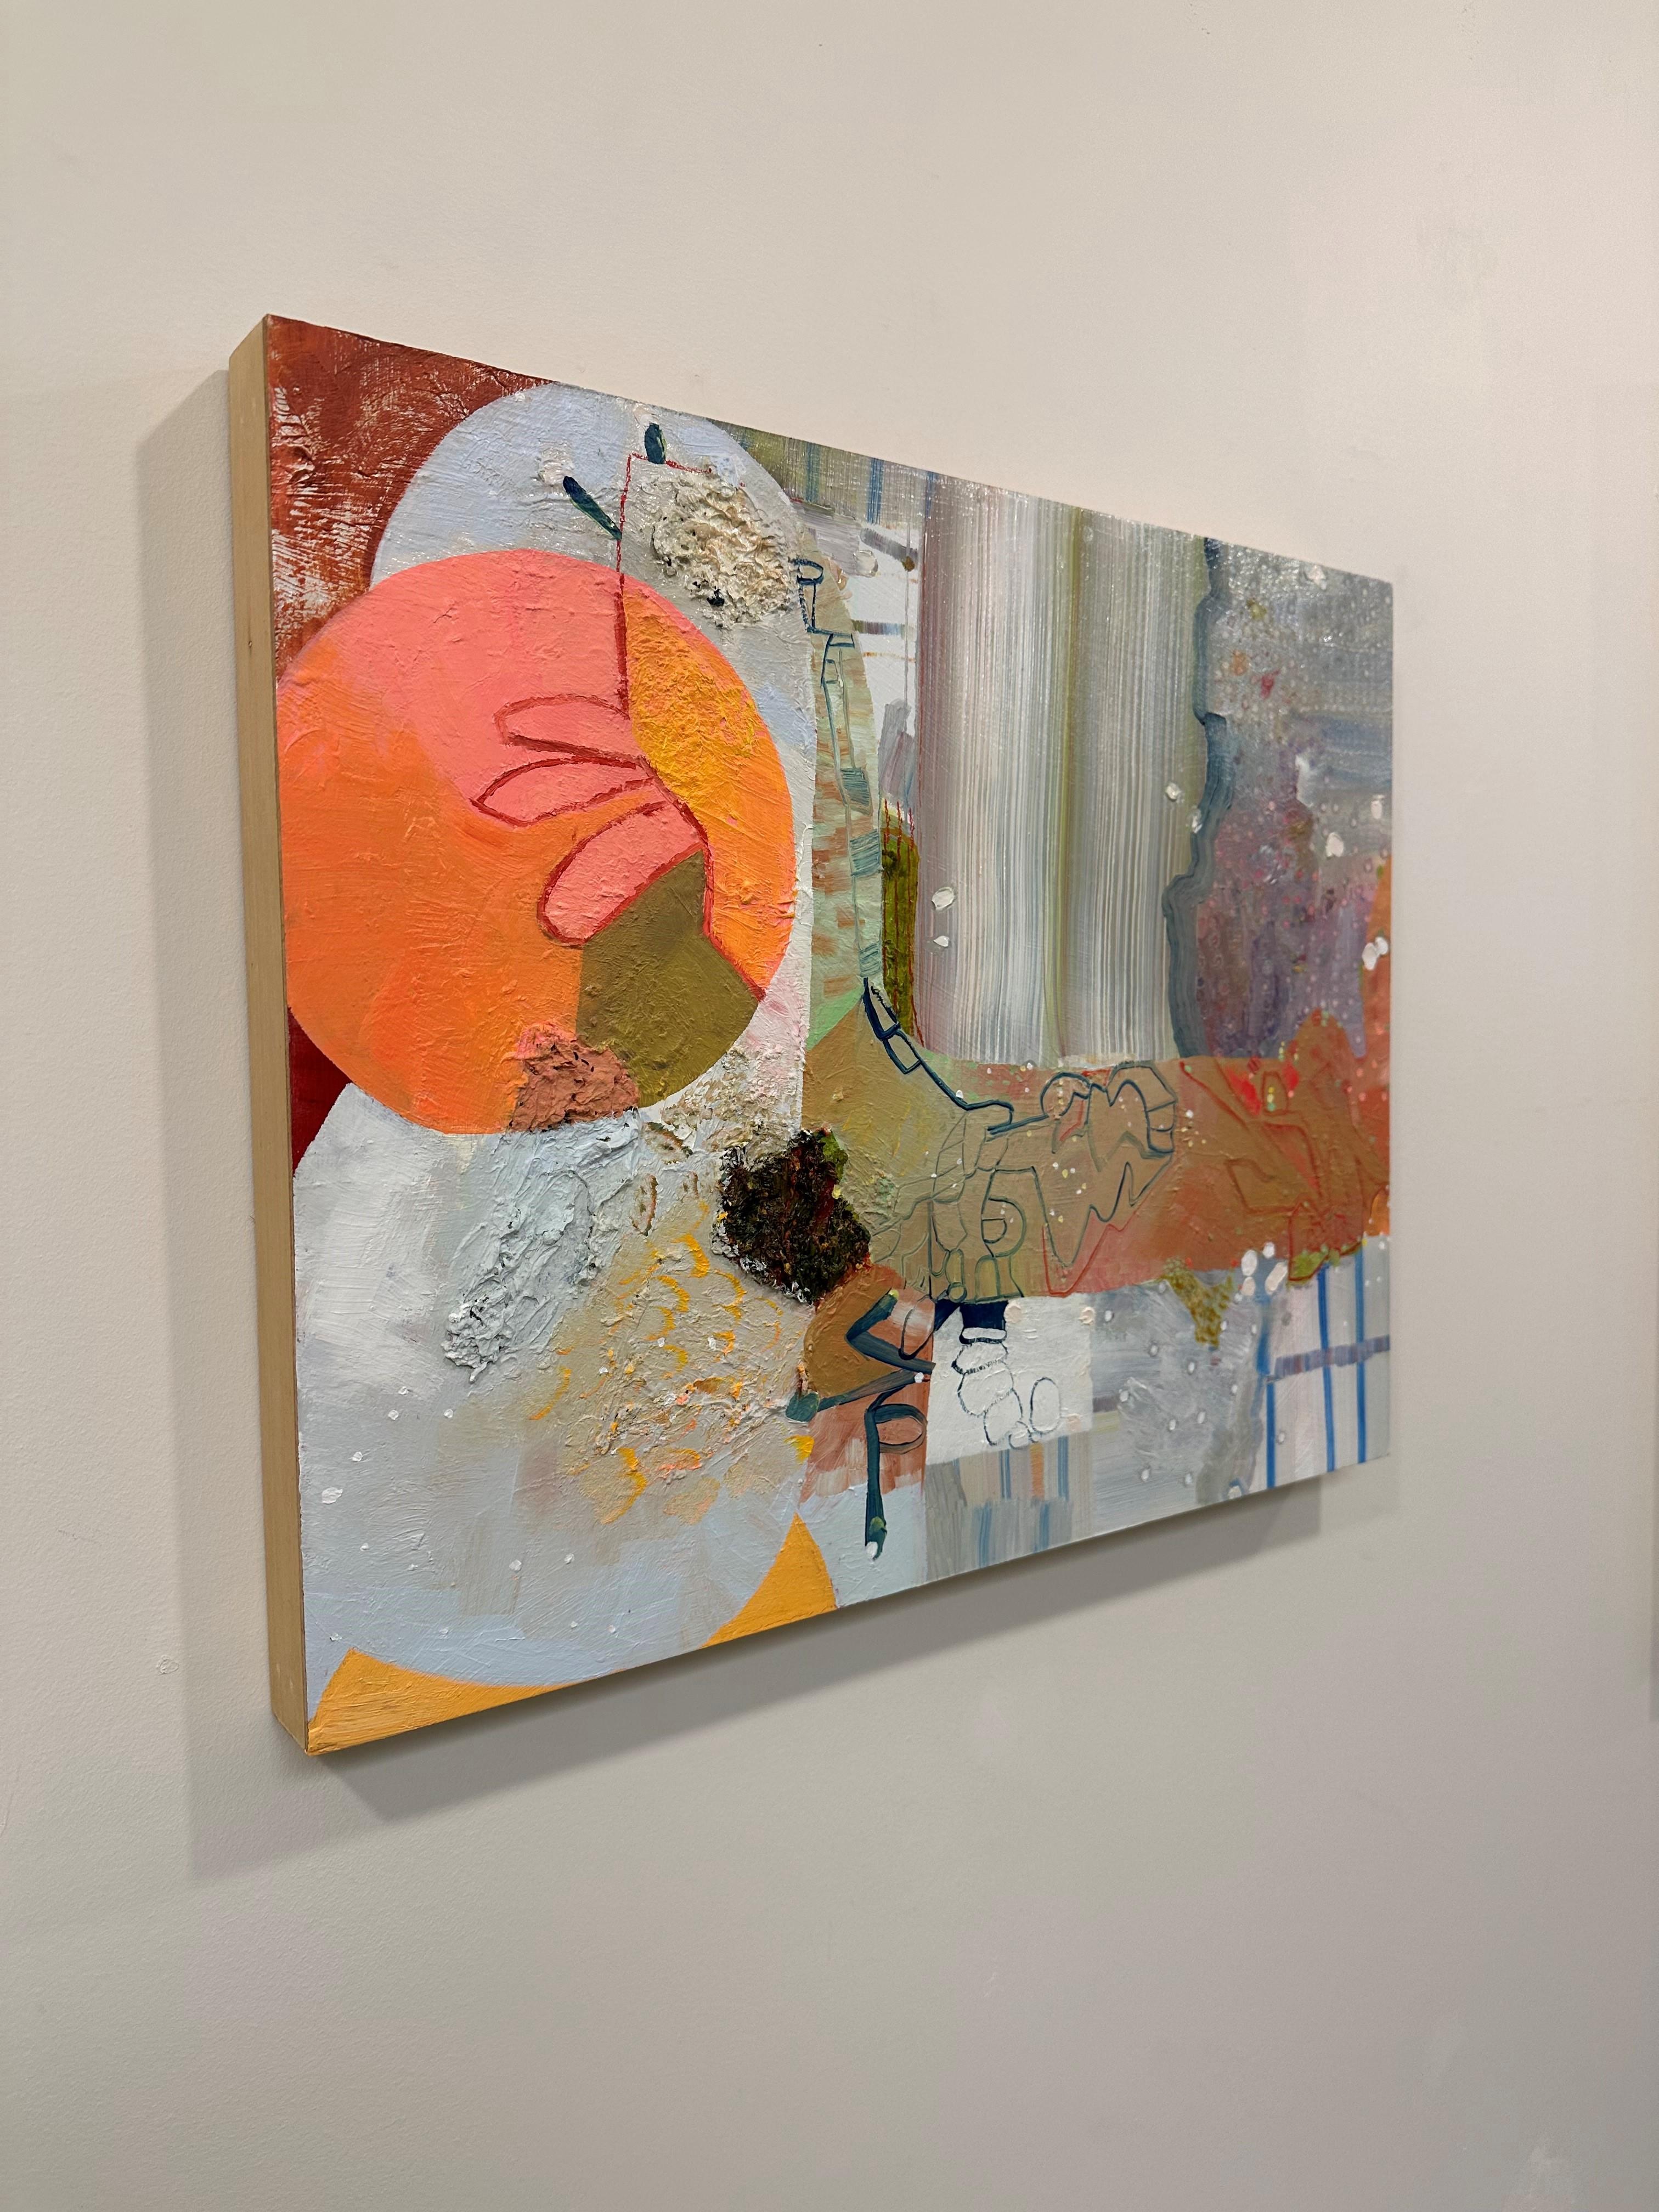 Dieses farbenfrohe abstrakte Gemälde besteht aus sorgfältig kombinierten Abschnitten verschiedener Texturen und Flächen mit Mustern, Kreisen, Punkten und Wellen, in überschwänglicher, fröhlicher Farbe. Kleine Momente in Rosa-, Orange-, Korallen-,